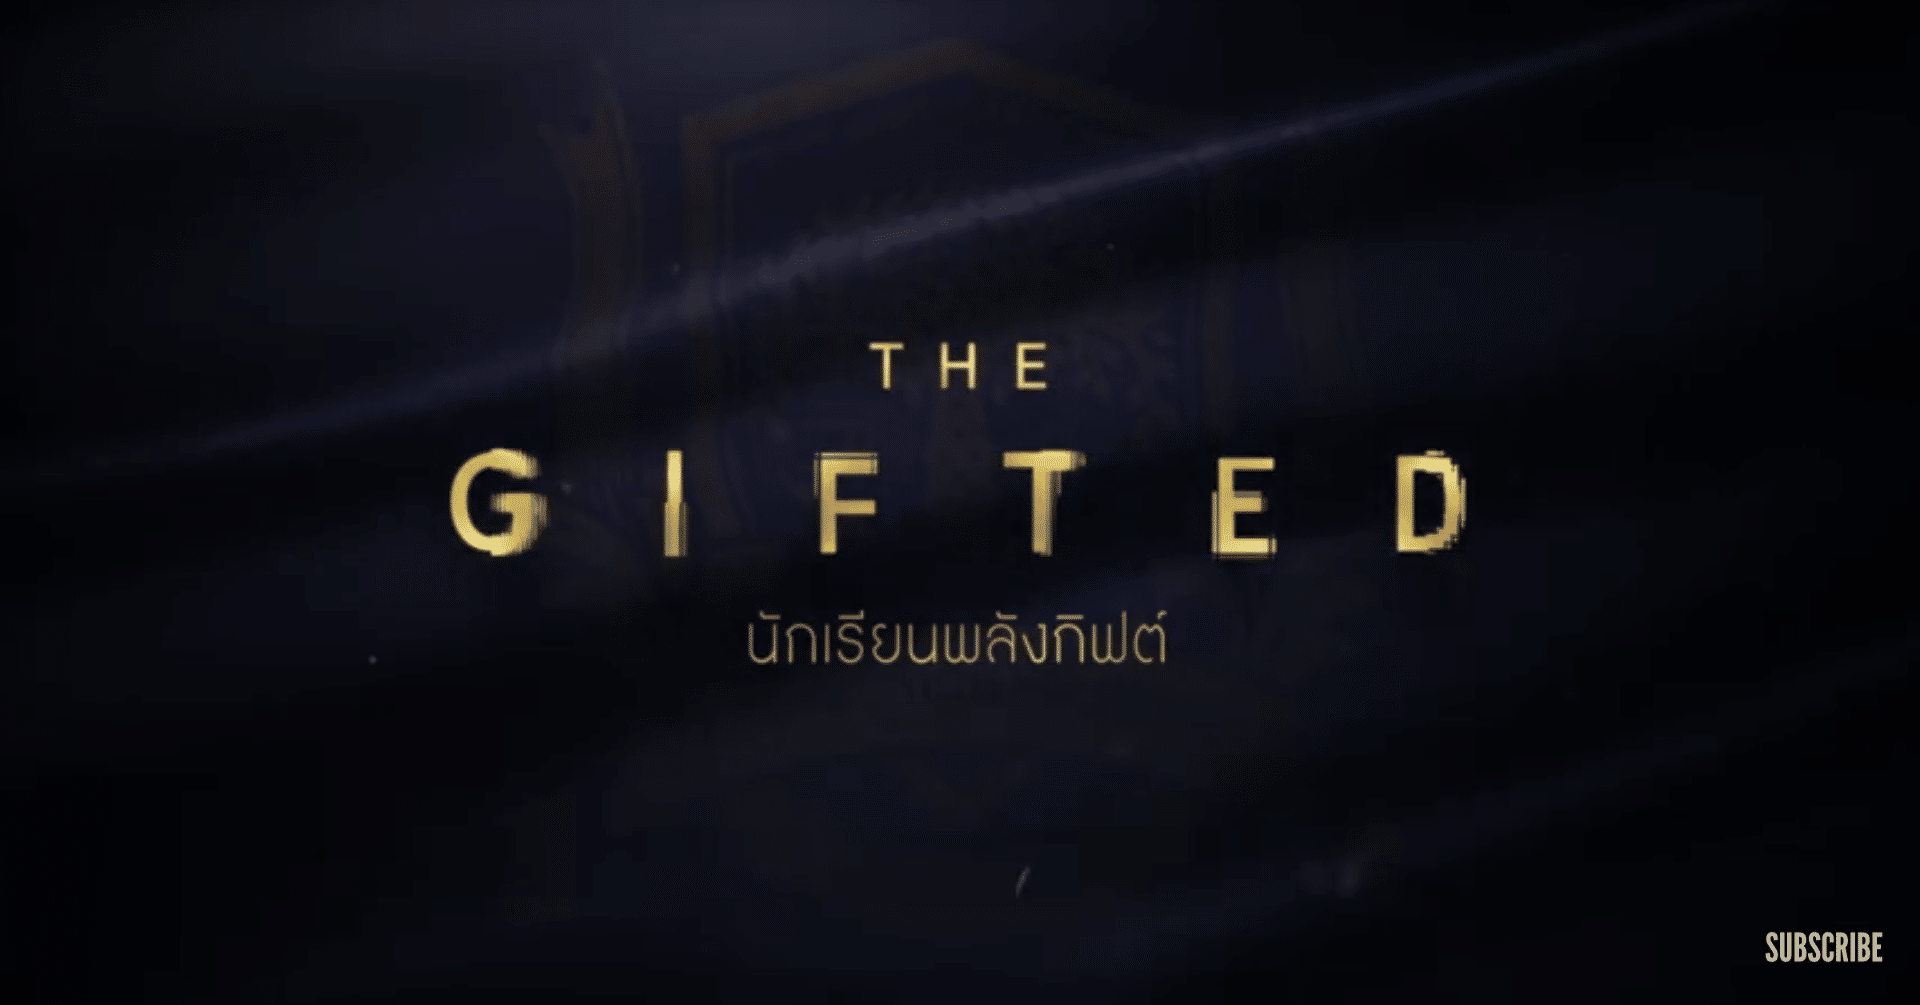 物語が疾走し 二転三転する緊迫感のあるミステリー タイドラマ The Gifted 感想 あこ Note